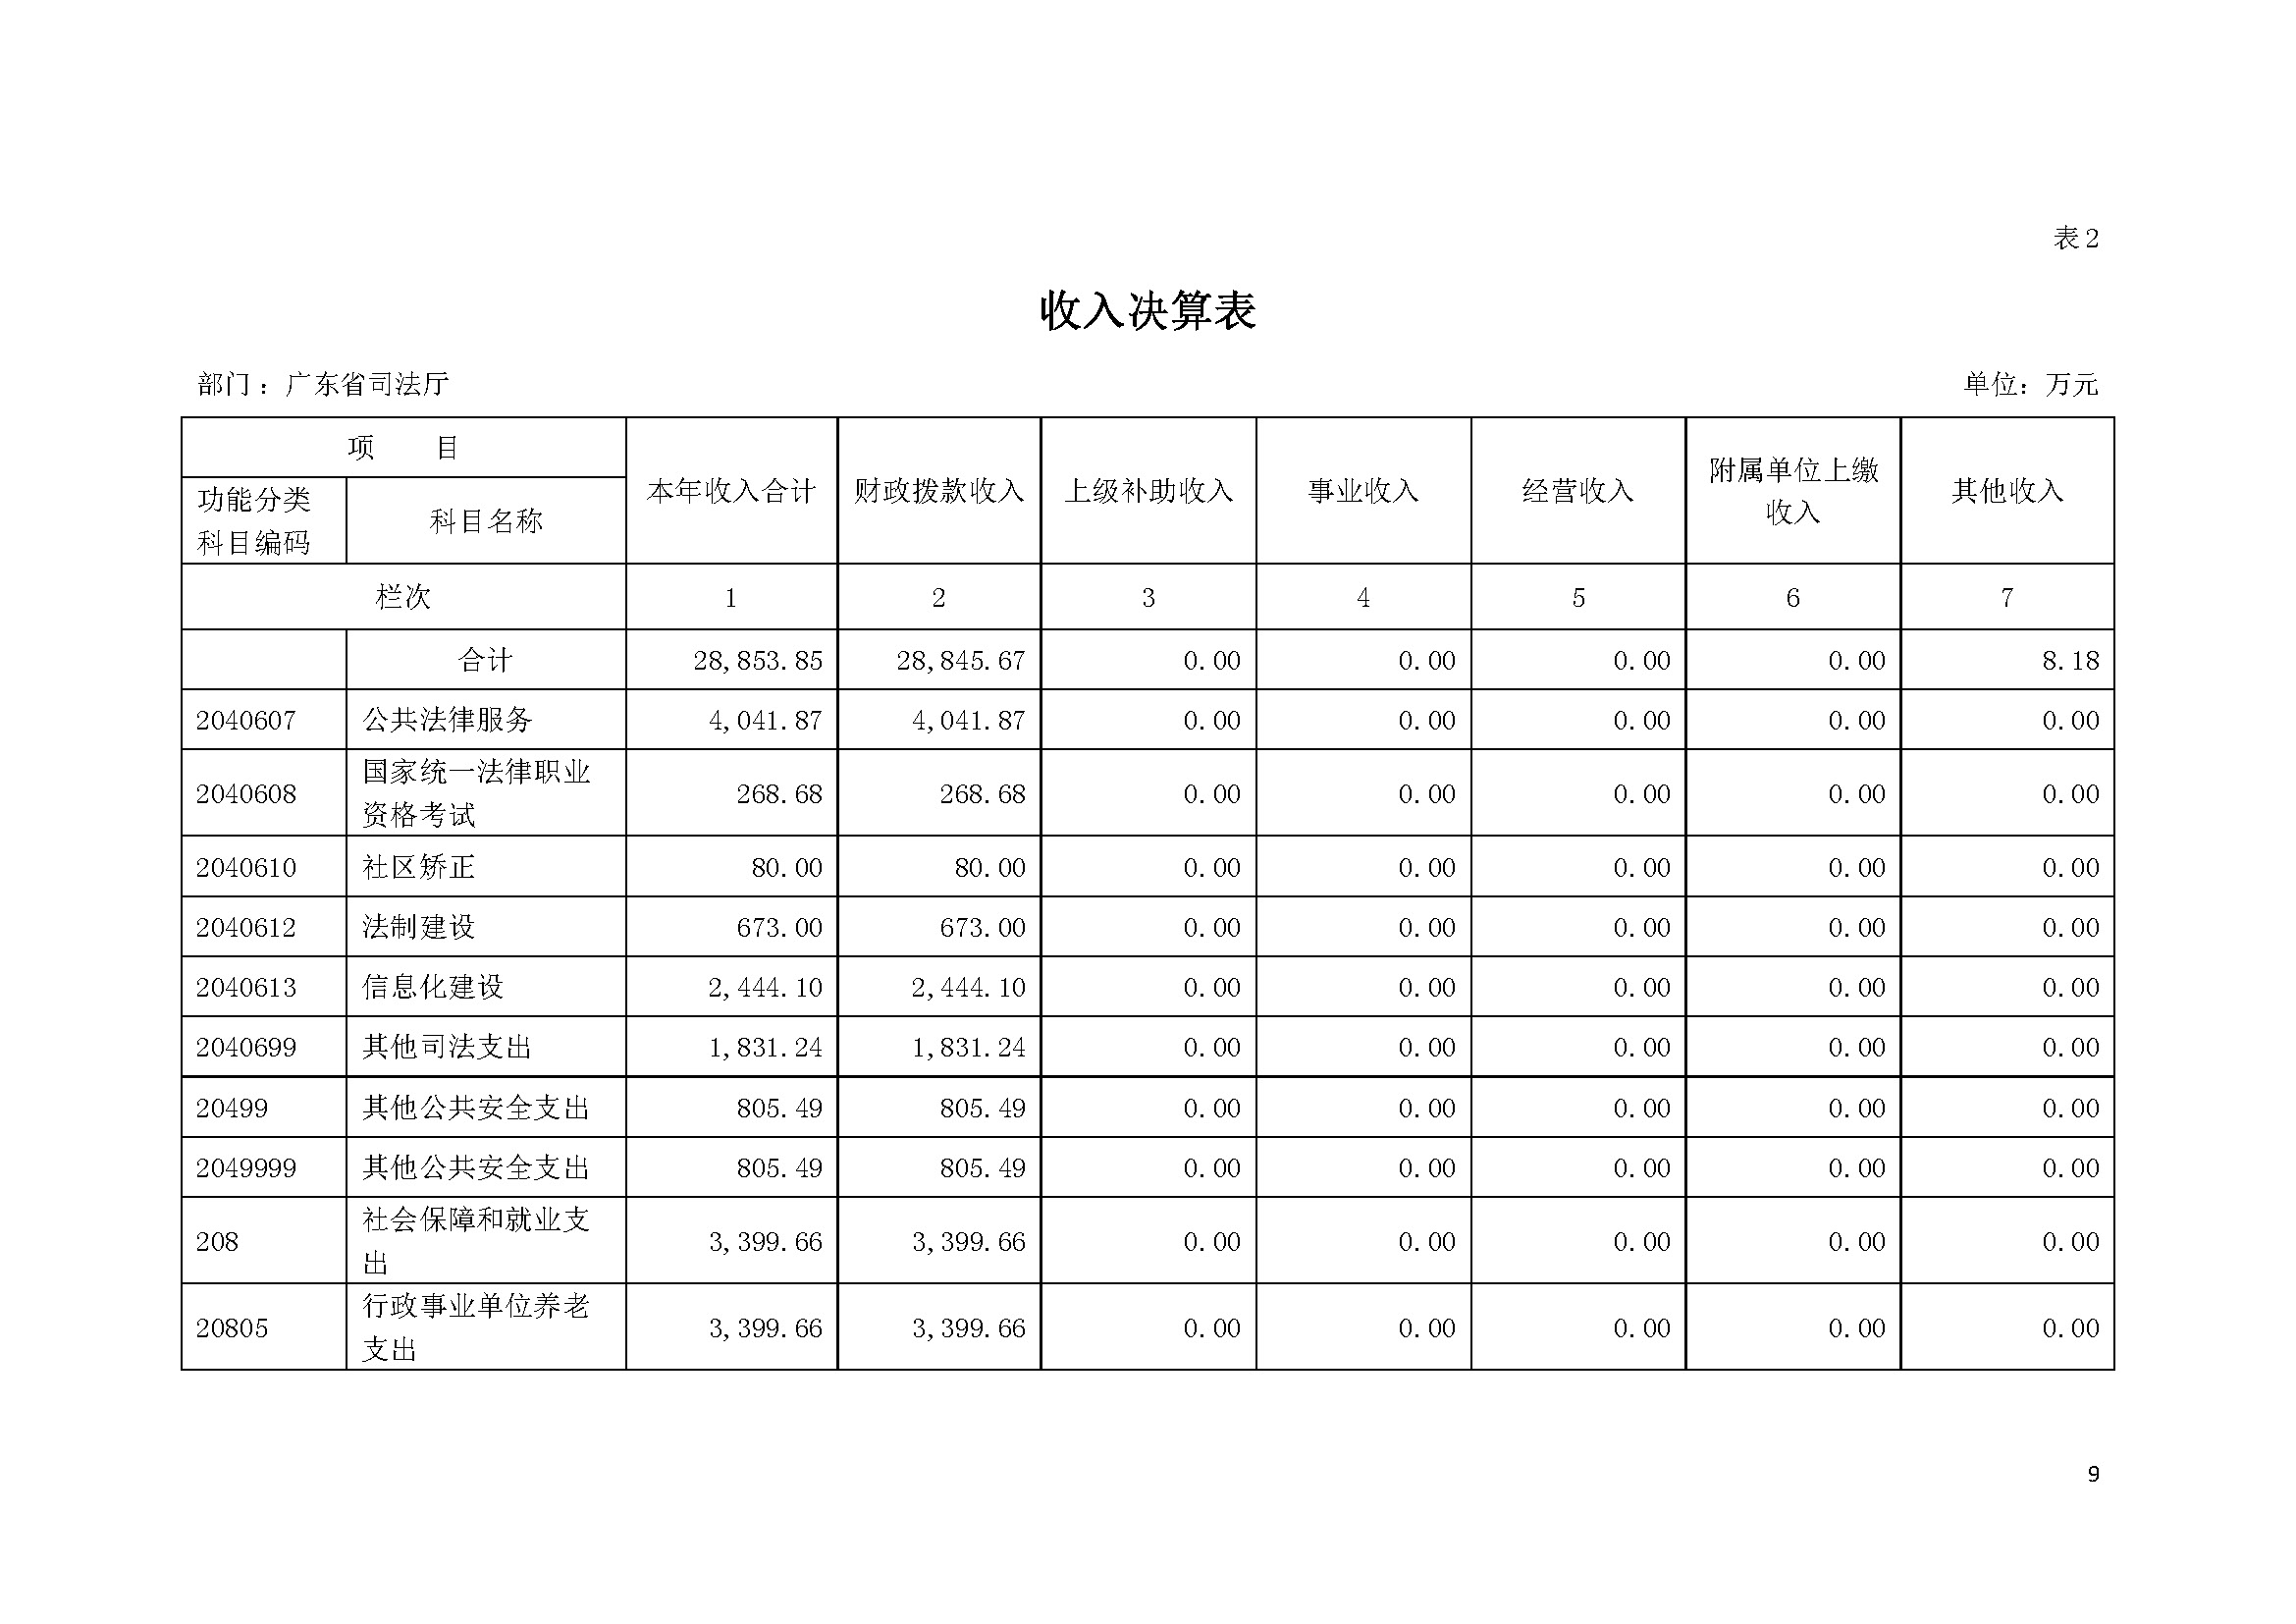 2021年广东省司法厅部门决算 _页面_09.jpg